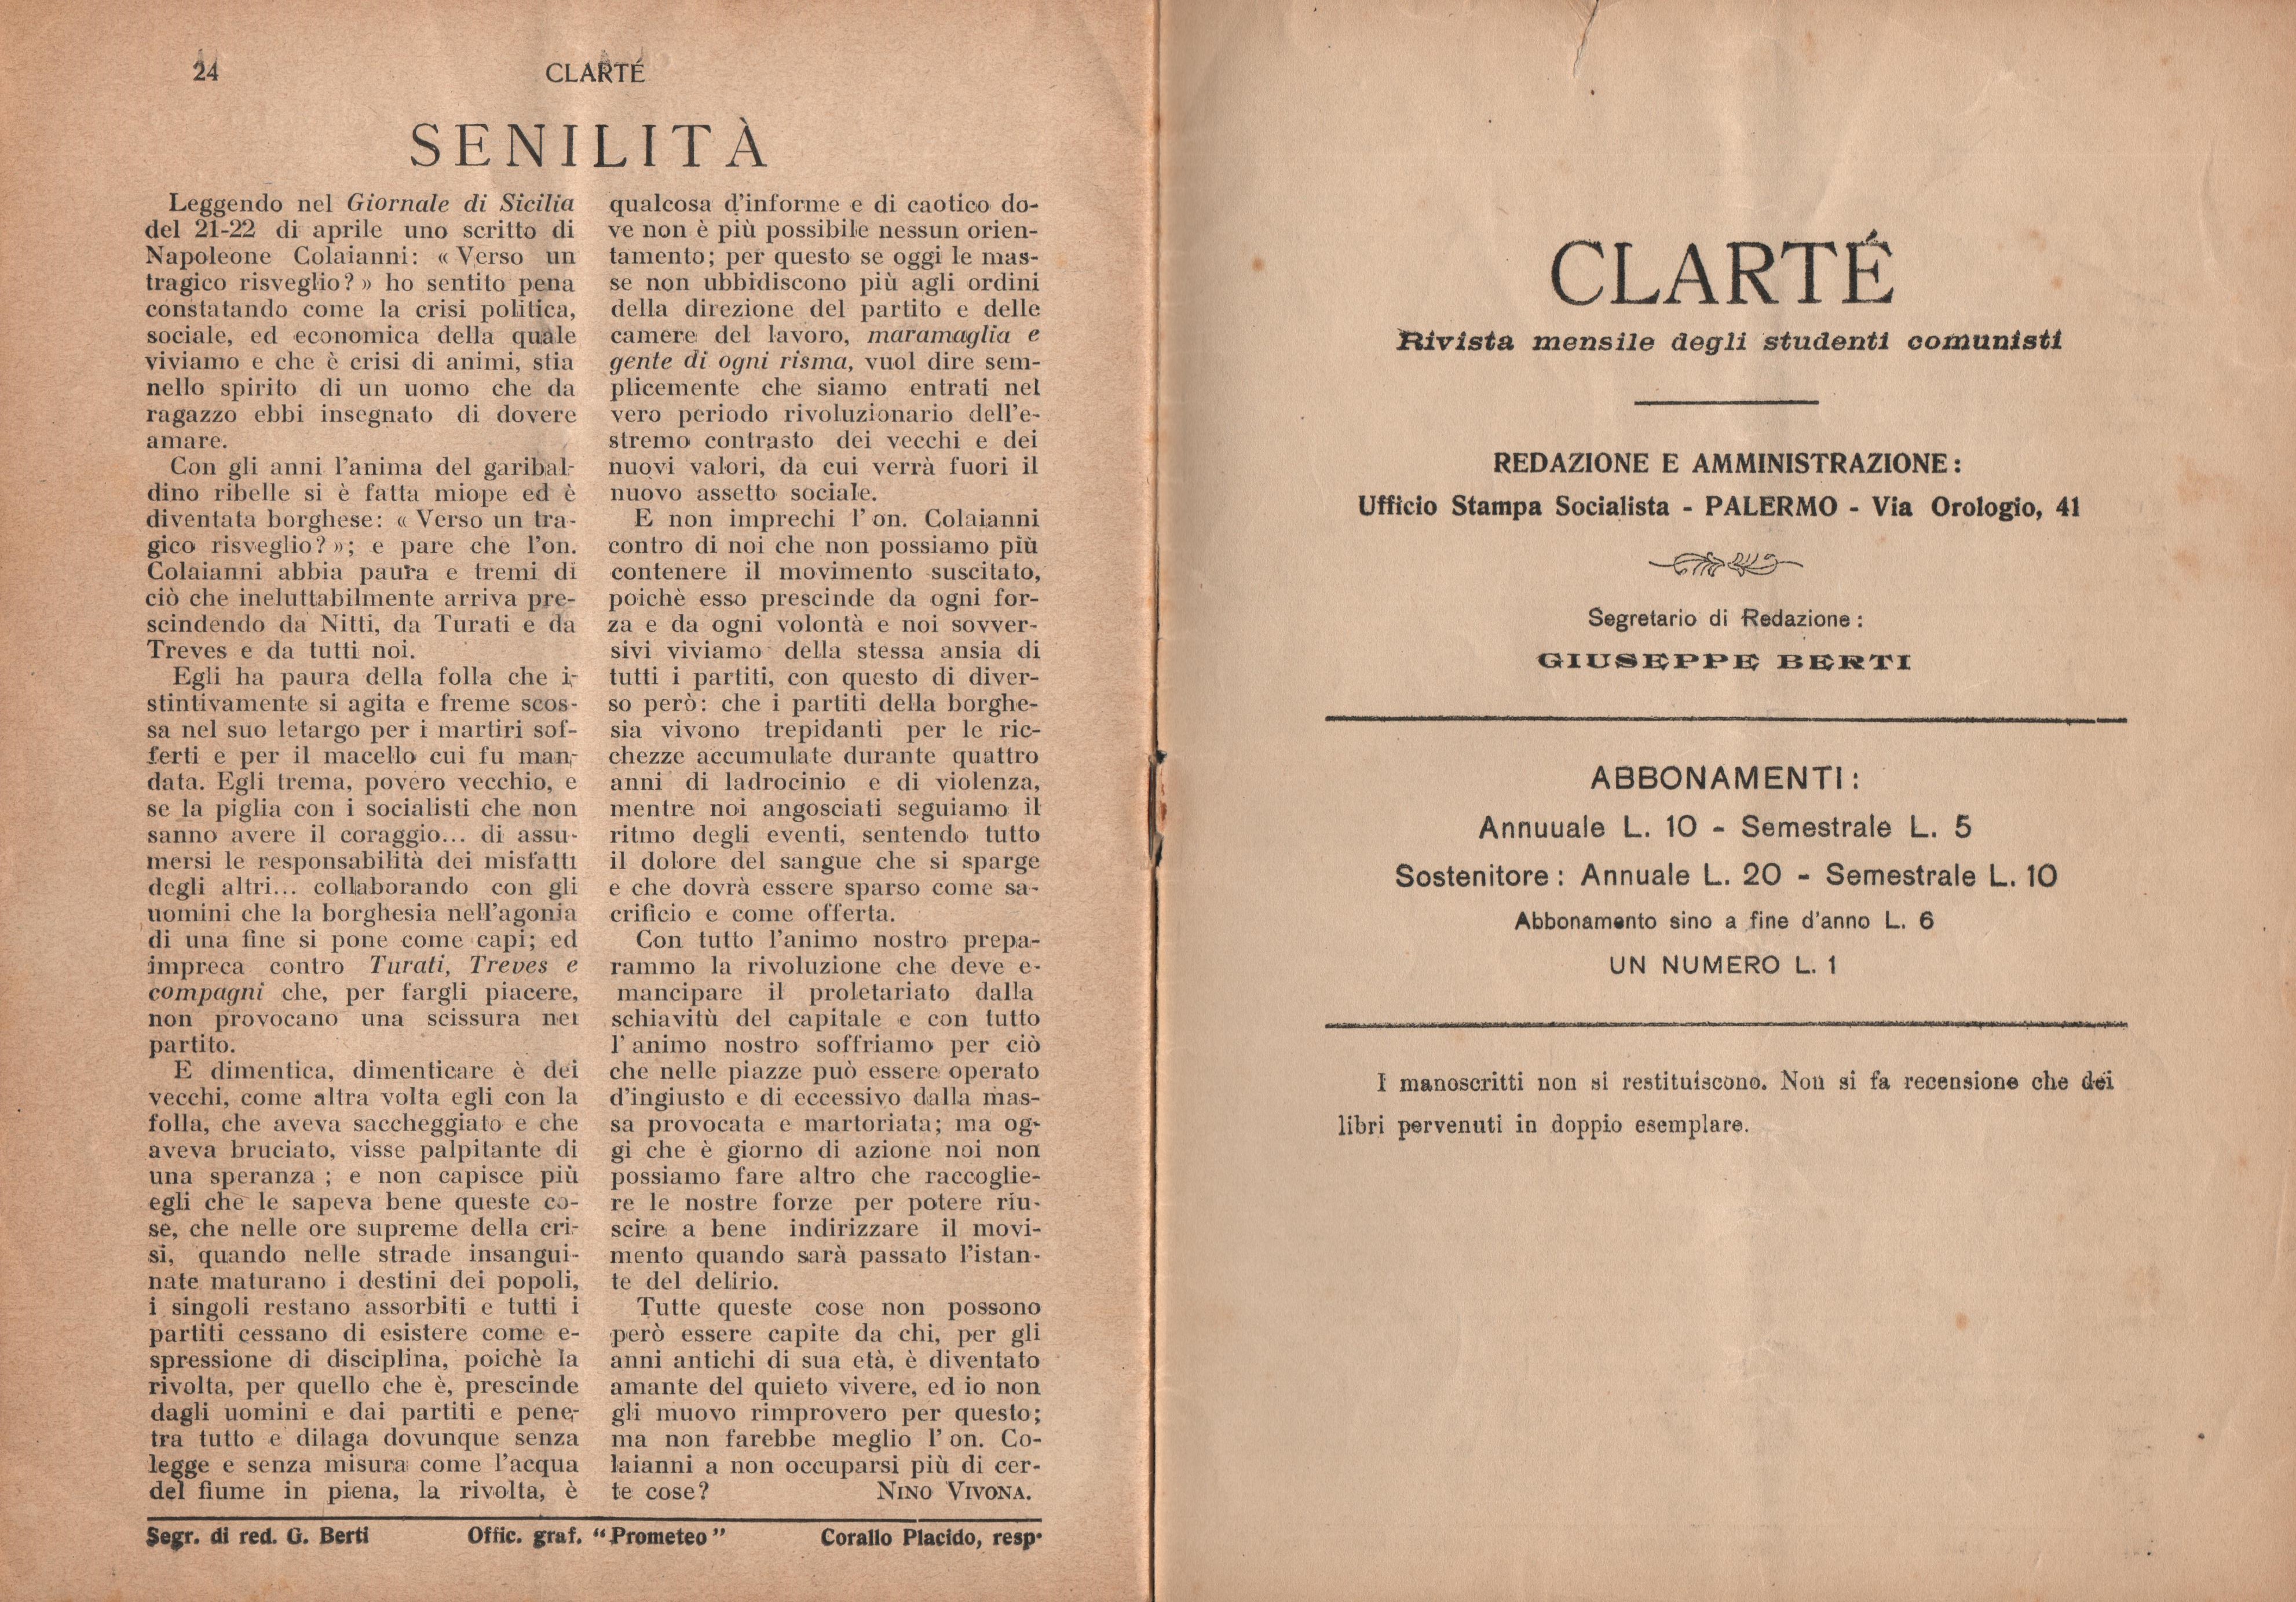  Clarté. Rivista mensile degli studenti comunisti (a. I, n. 1, Palermo, 15 maggio 1920) - pag. 14